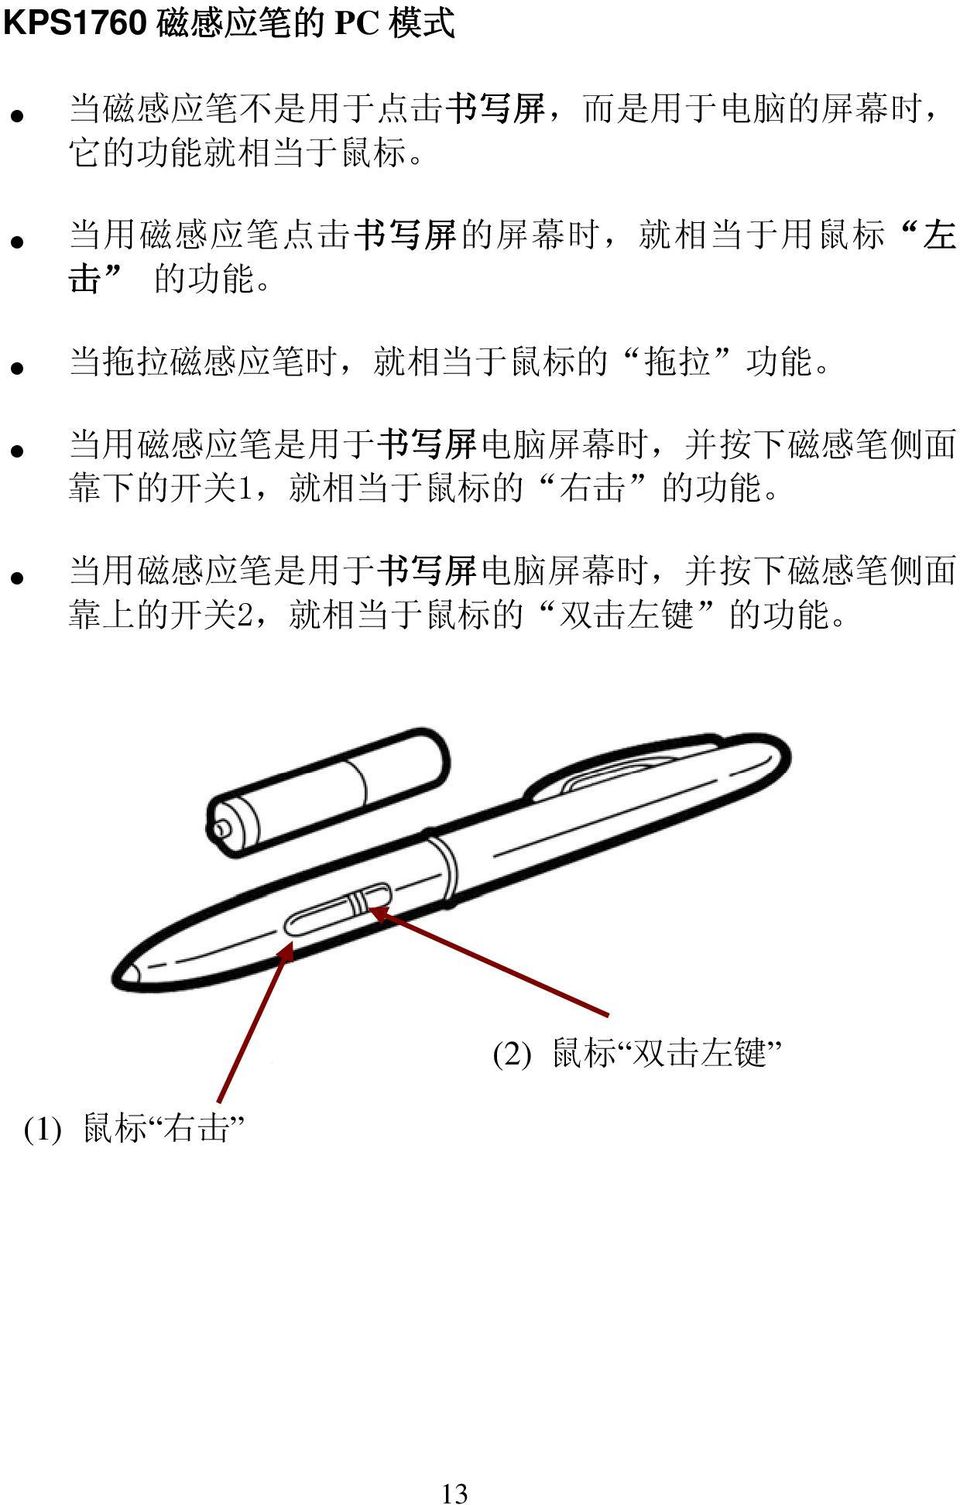 笔 是 用 于 书 写 屏 电 脑 屏 幕 时, 并 按 下 磁 感 笔 侧 面 靠 下 的 开 关 1, 就 相 当 于 鼠 标 的 右 击 的 功 能 当 用 磁 感 应 笔 是 用 于 书 写